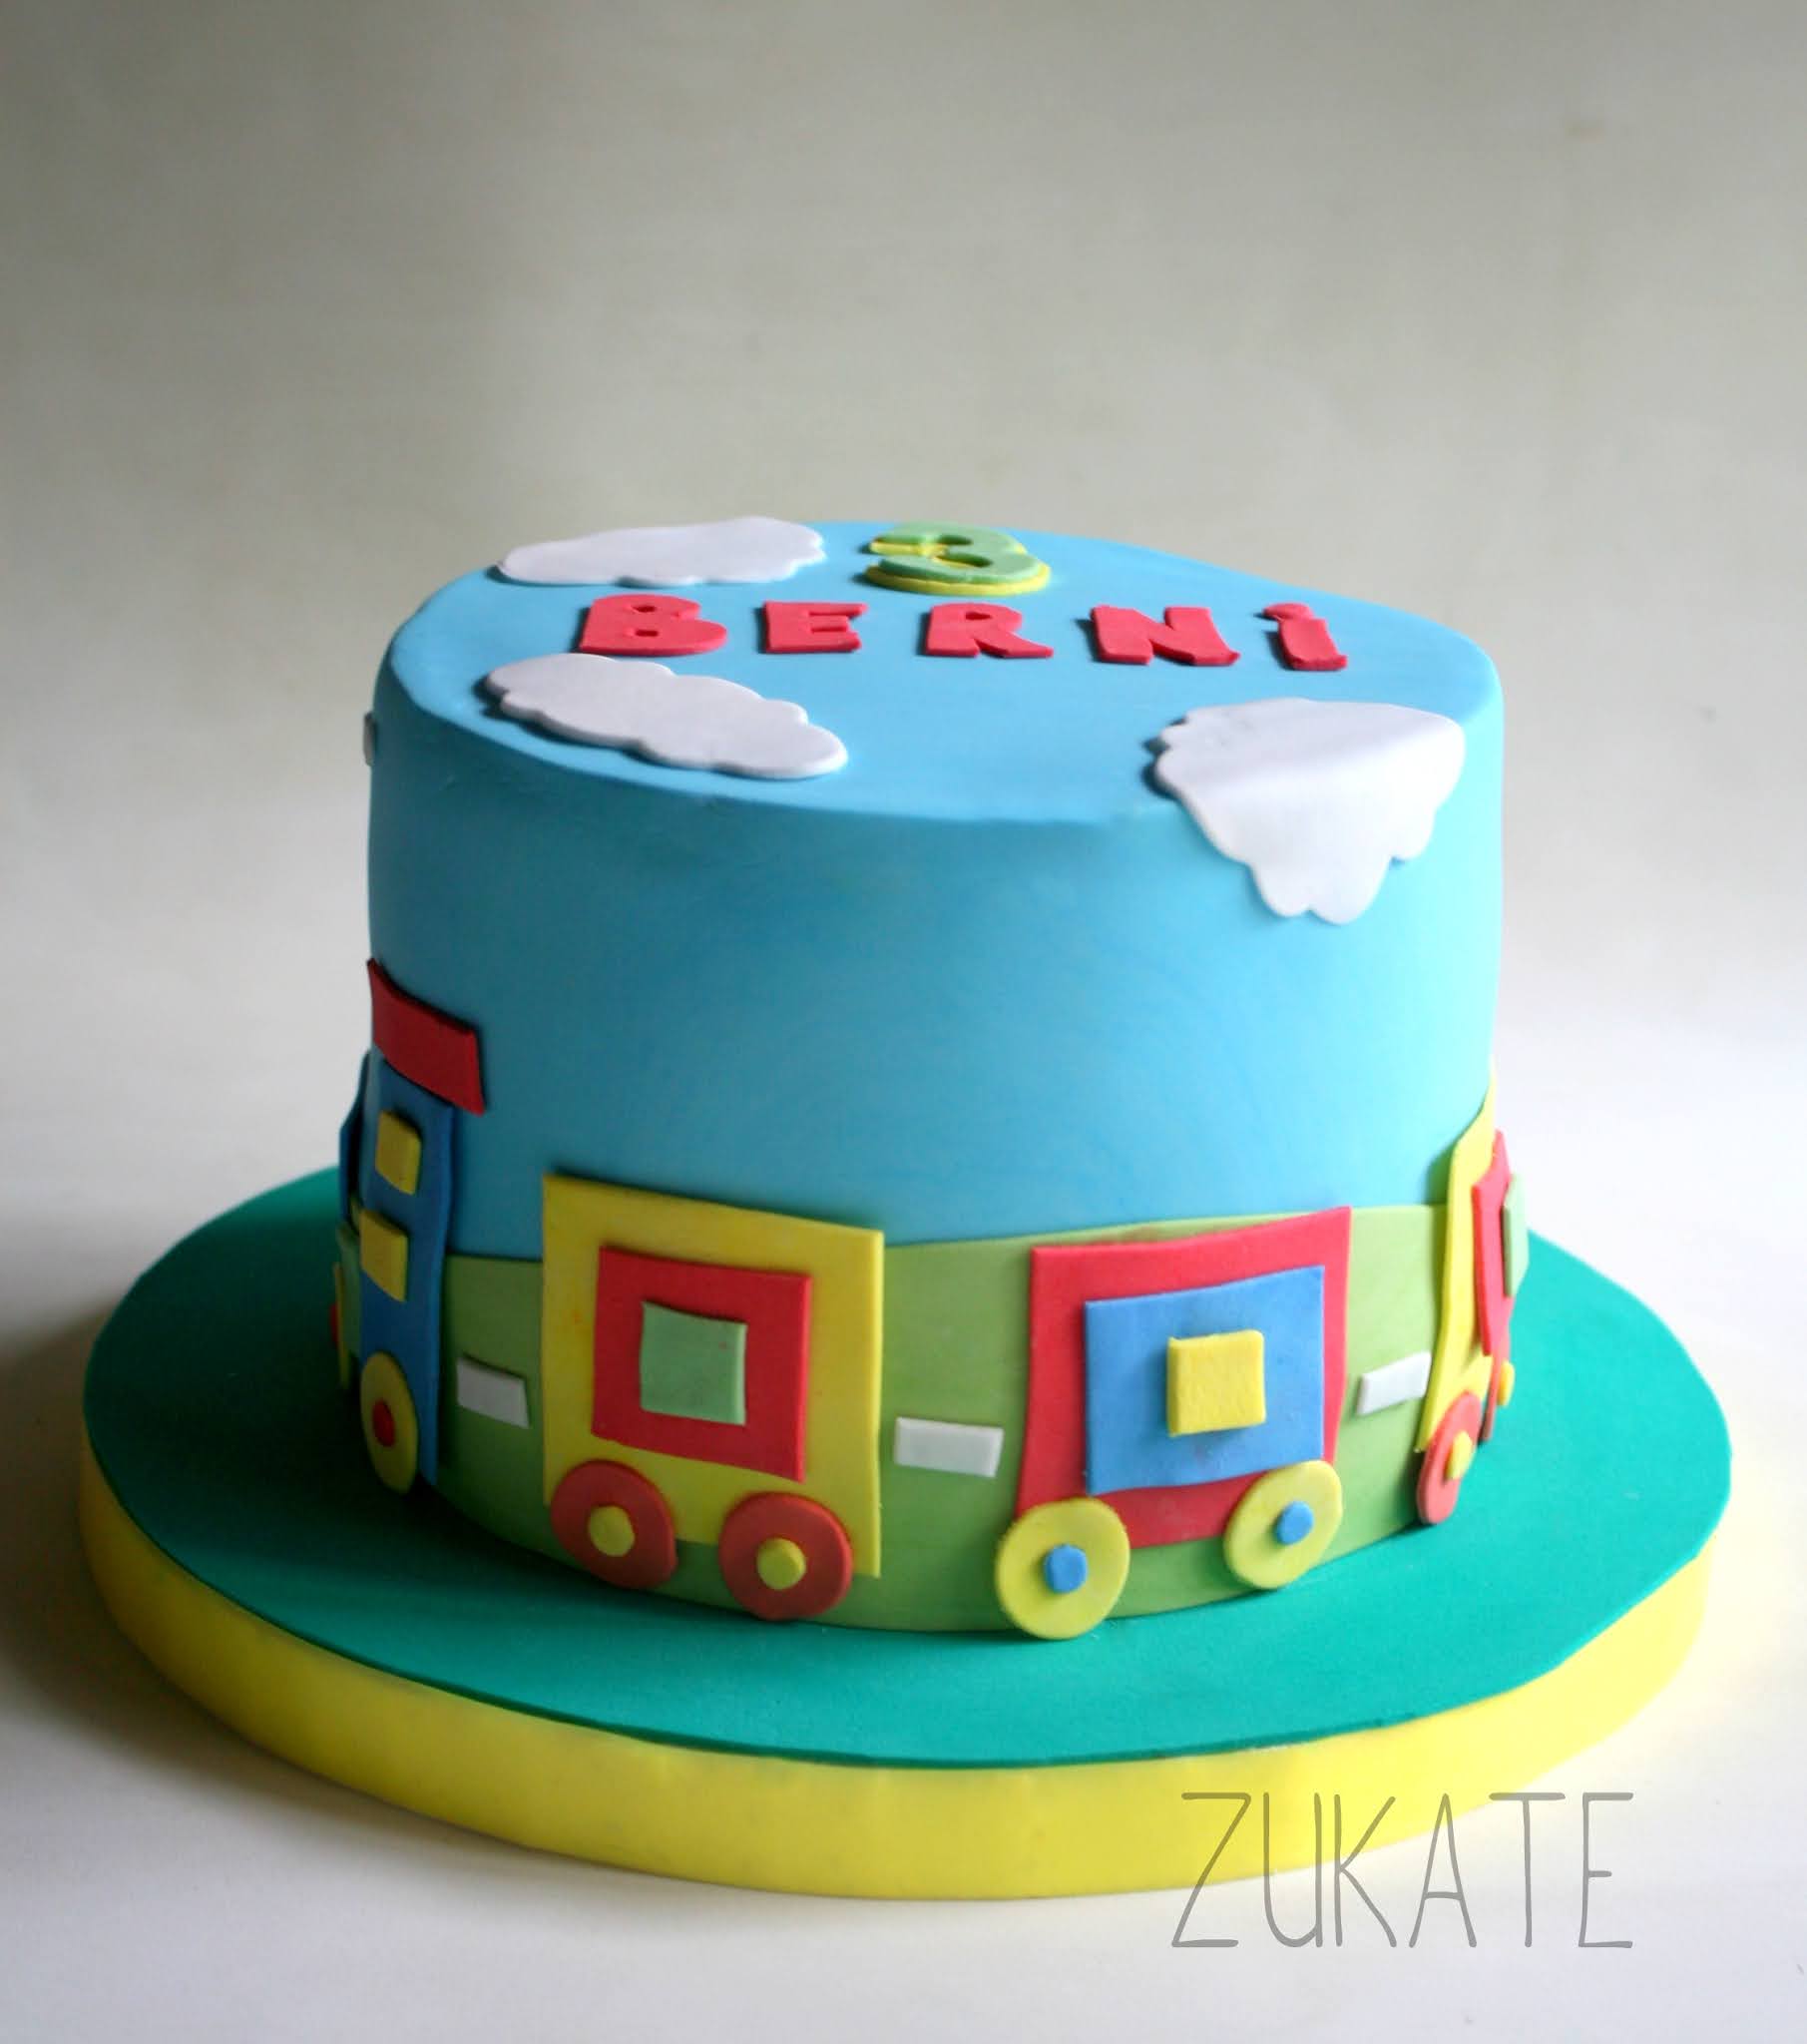 Decoraciones de Lilo & Stitch para Tartas de 20 personas, decoración de  feliz cumpleaños para niños